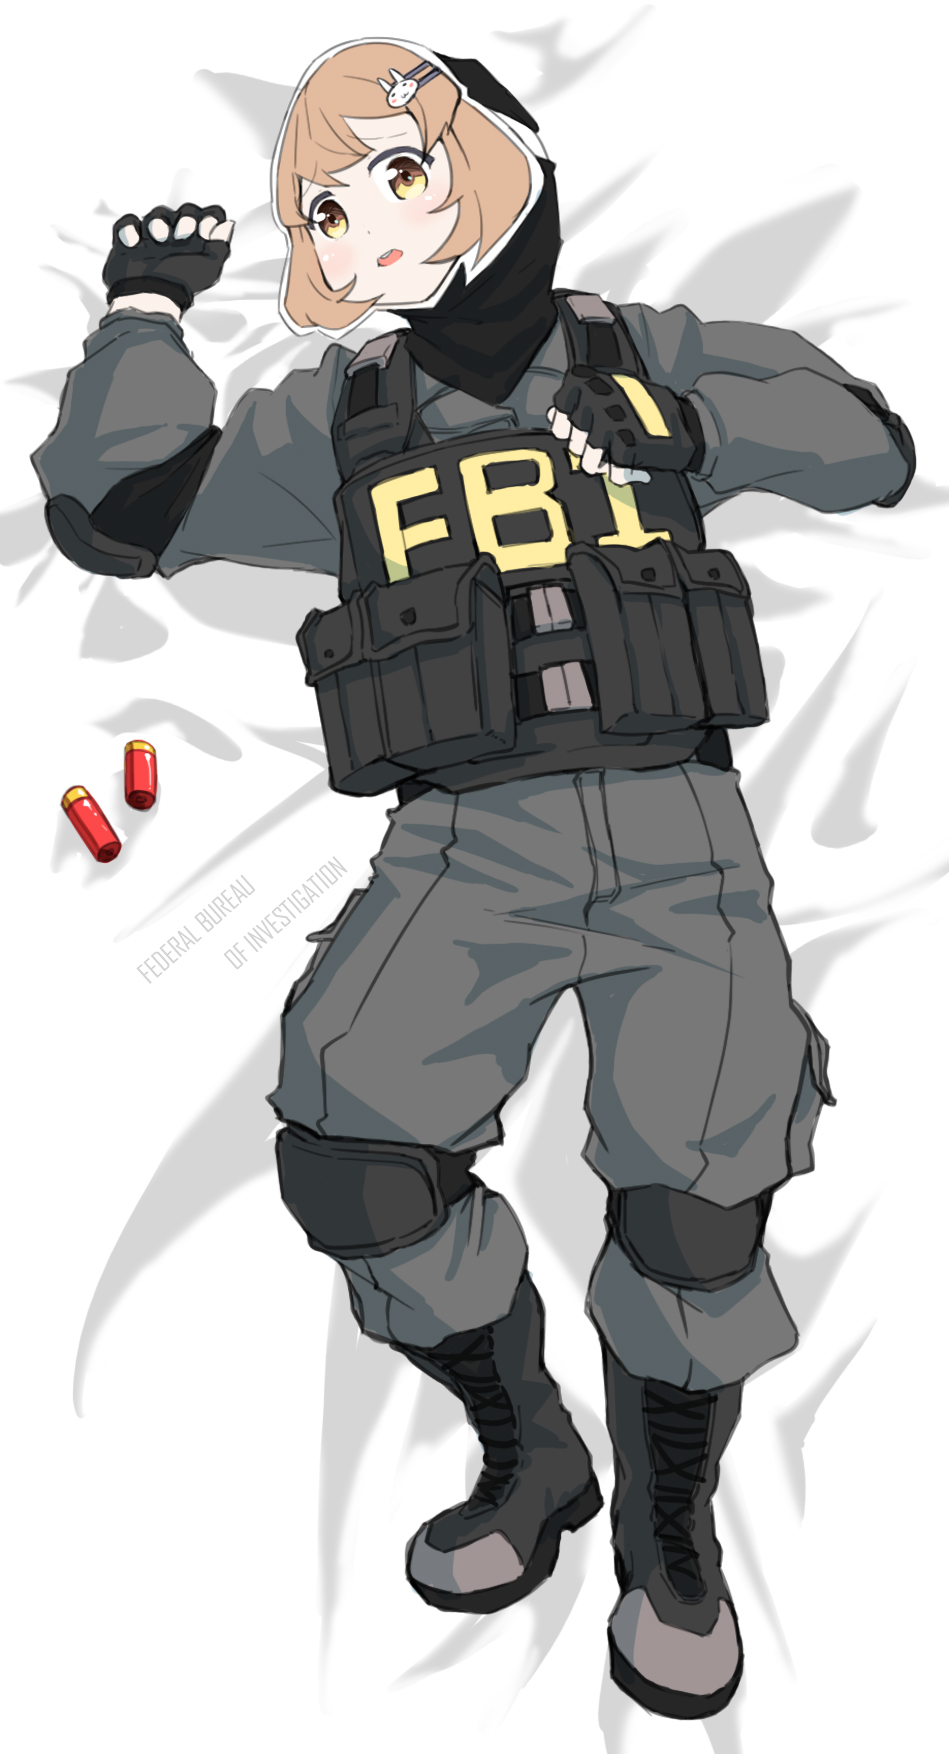 無題-FBI(振り向き撲滅委員会)FBI捜査官